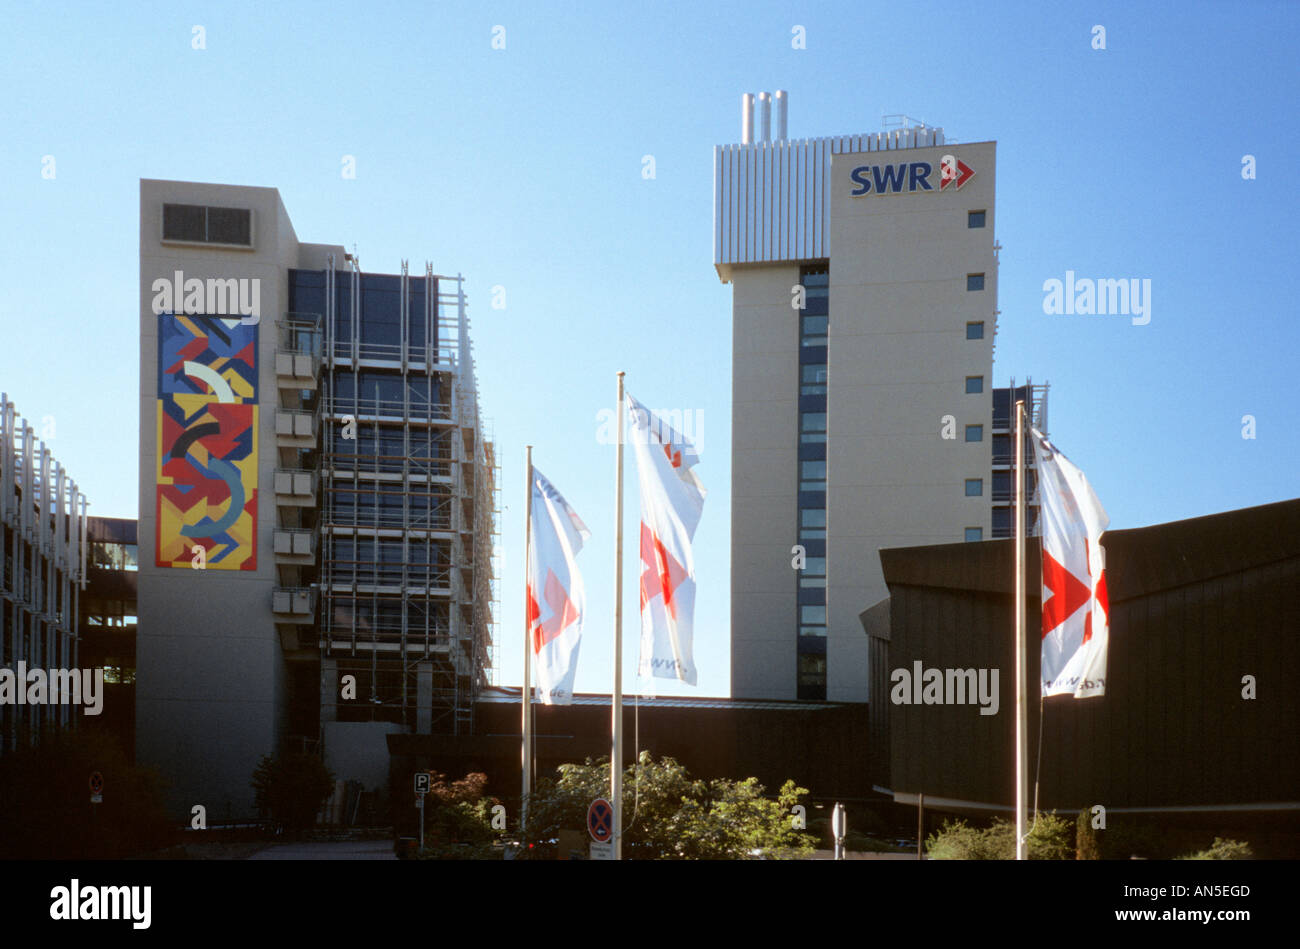 Bâtiment de la société de radiodiffusion Südwestrundfunk SWR de Stuttgart Allemagne Banque D'Images